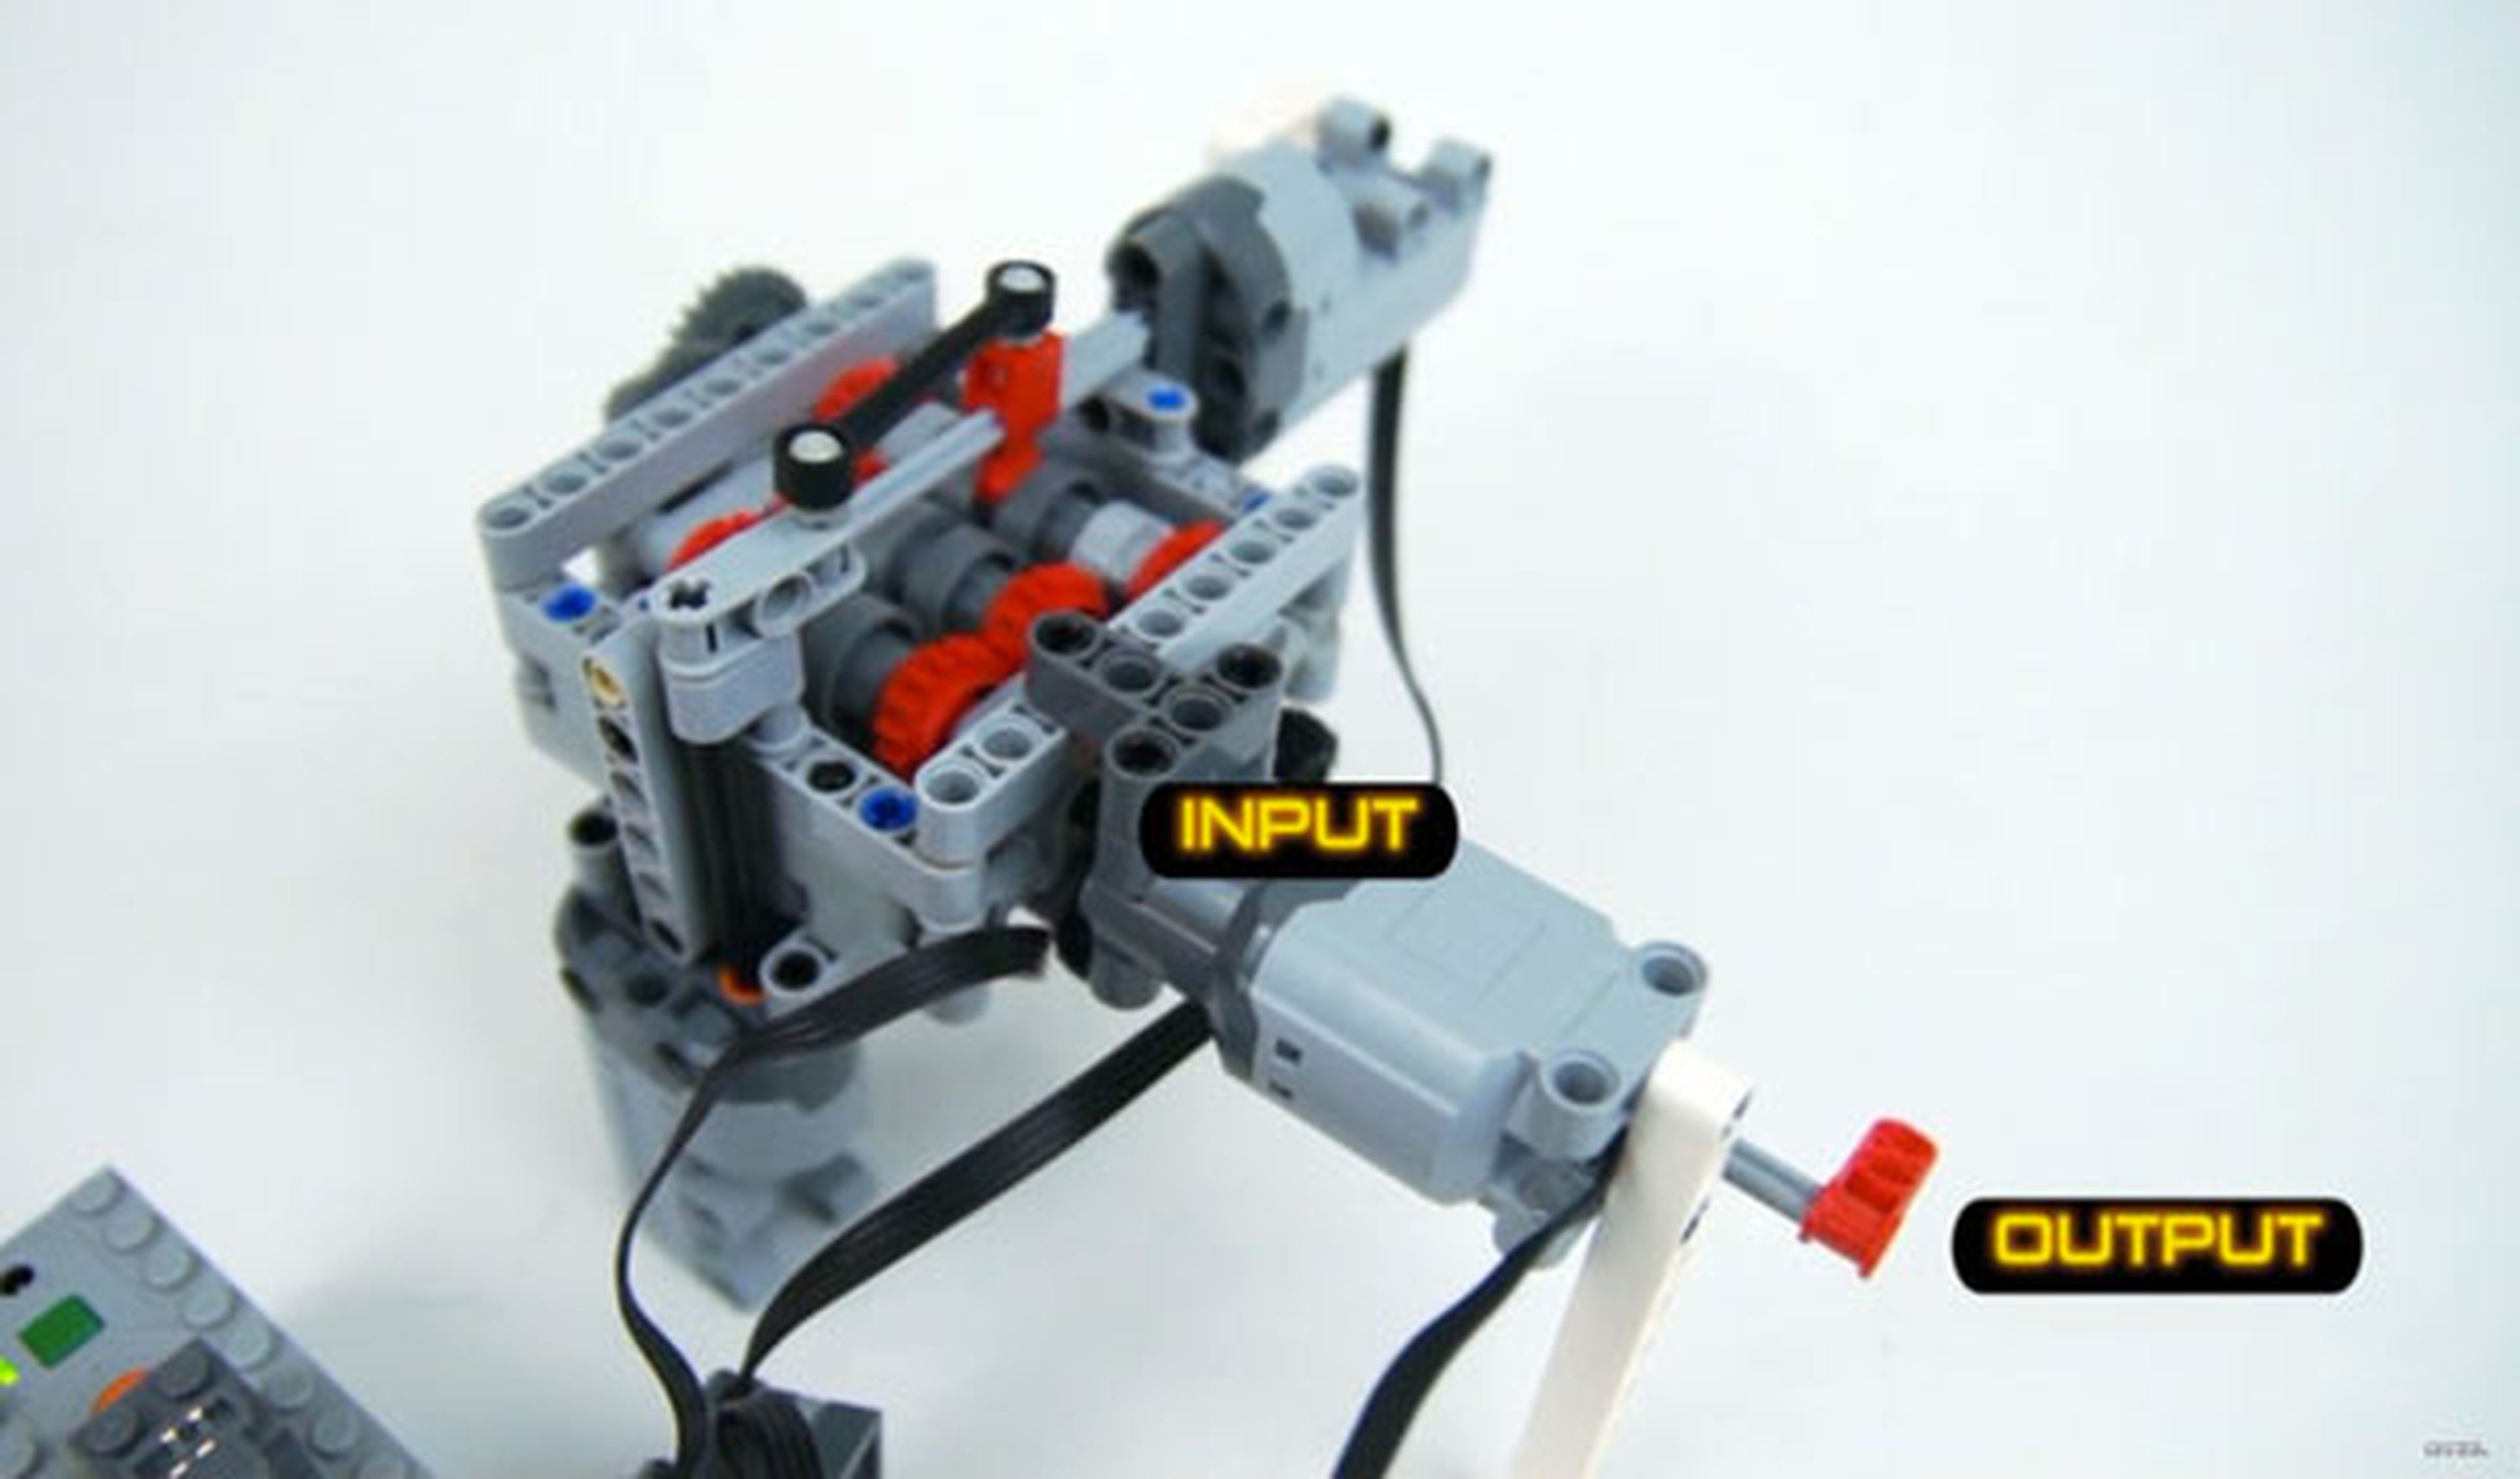 ¡Increíble! Fabrican una transmisión de 6 marchas con LEGO